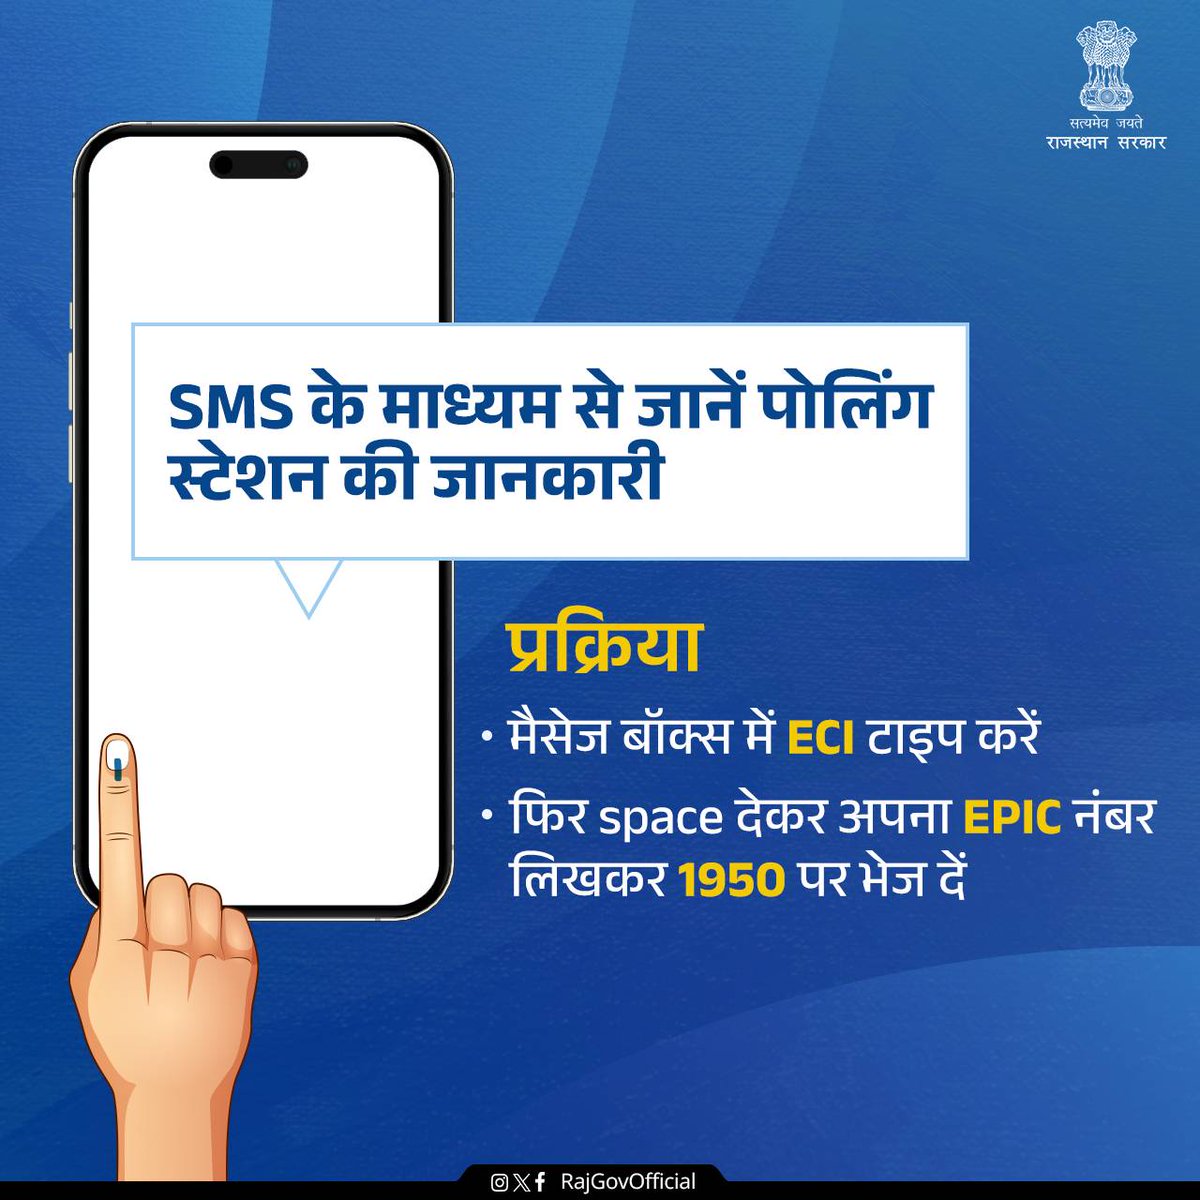 नागरिकों के लिए अपना पोलिंग स्टेशन sms के माध्यम से जानने की सुविधा भी उपलब्ध है। इसके लिए वोटर हेल्पलाइन 1950 पर मेसेज करना होगा। #RajasthanElection2023